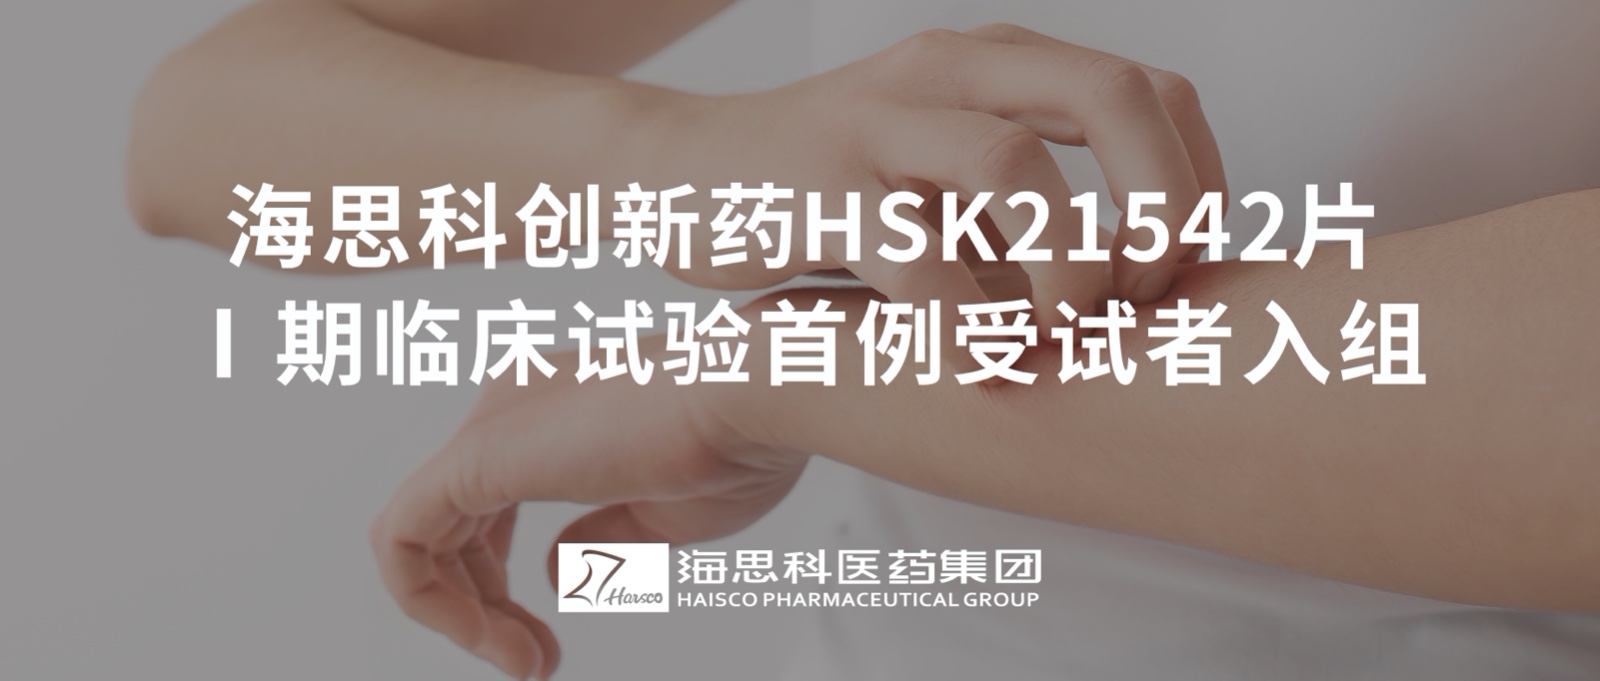 老哥集团HSK21542片Ⅰ期临床试验首例受试者入组